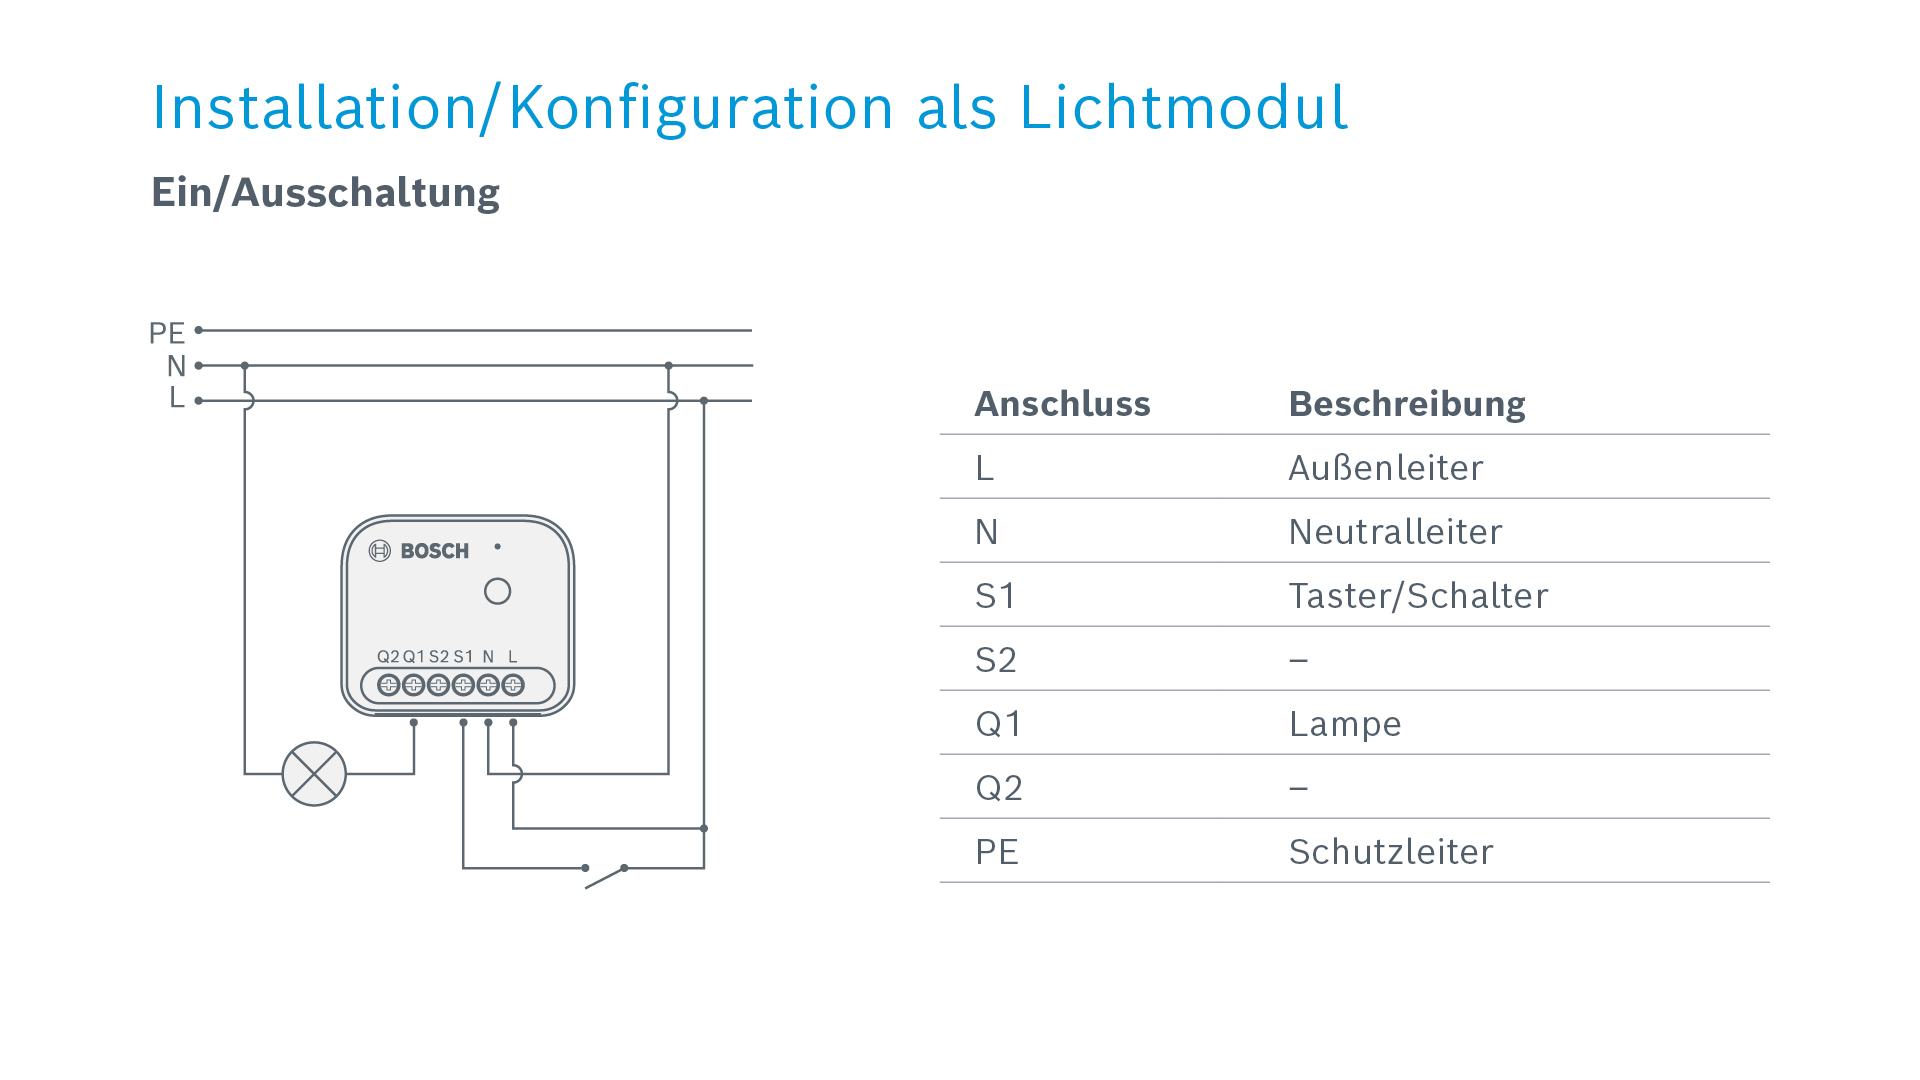 https://www.bosch-smarthome.com/de/media/de/content/03_produkte/01_geraete/20_lichtsteuerung_ii/05_aggregation_expandable/bsh_produktdetails_licht-ii_ein-ausschalten.jpg